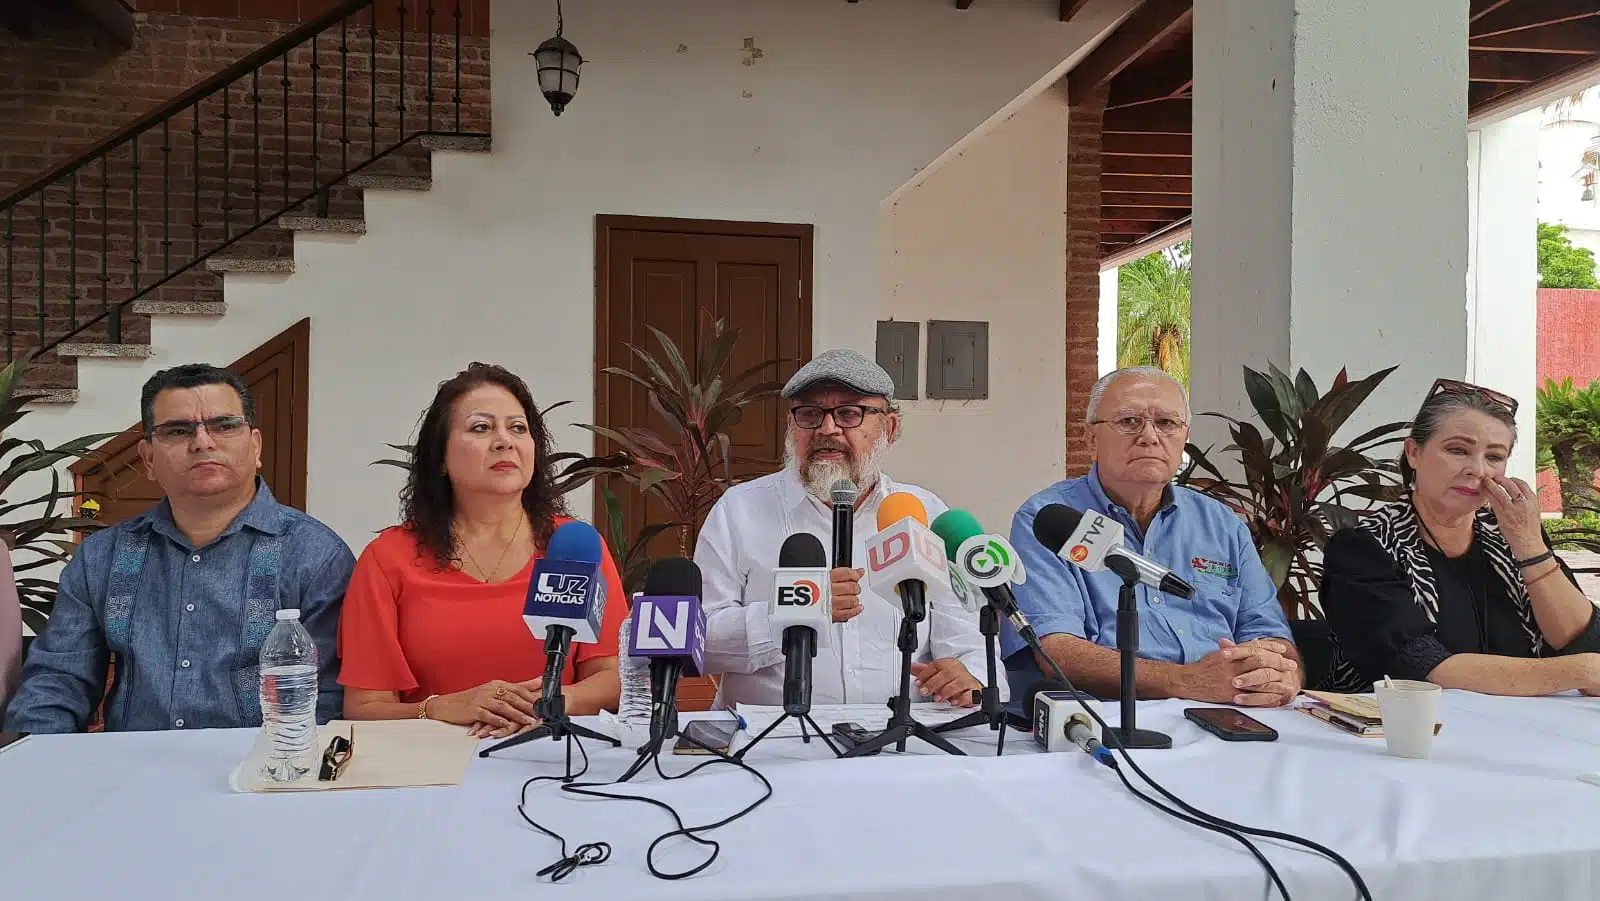 Gladis Aidé Gastélum Barreras, Rodolfo Arriaga Robles y demas personas en rueda de prensa